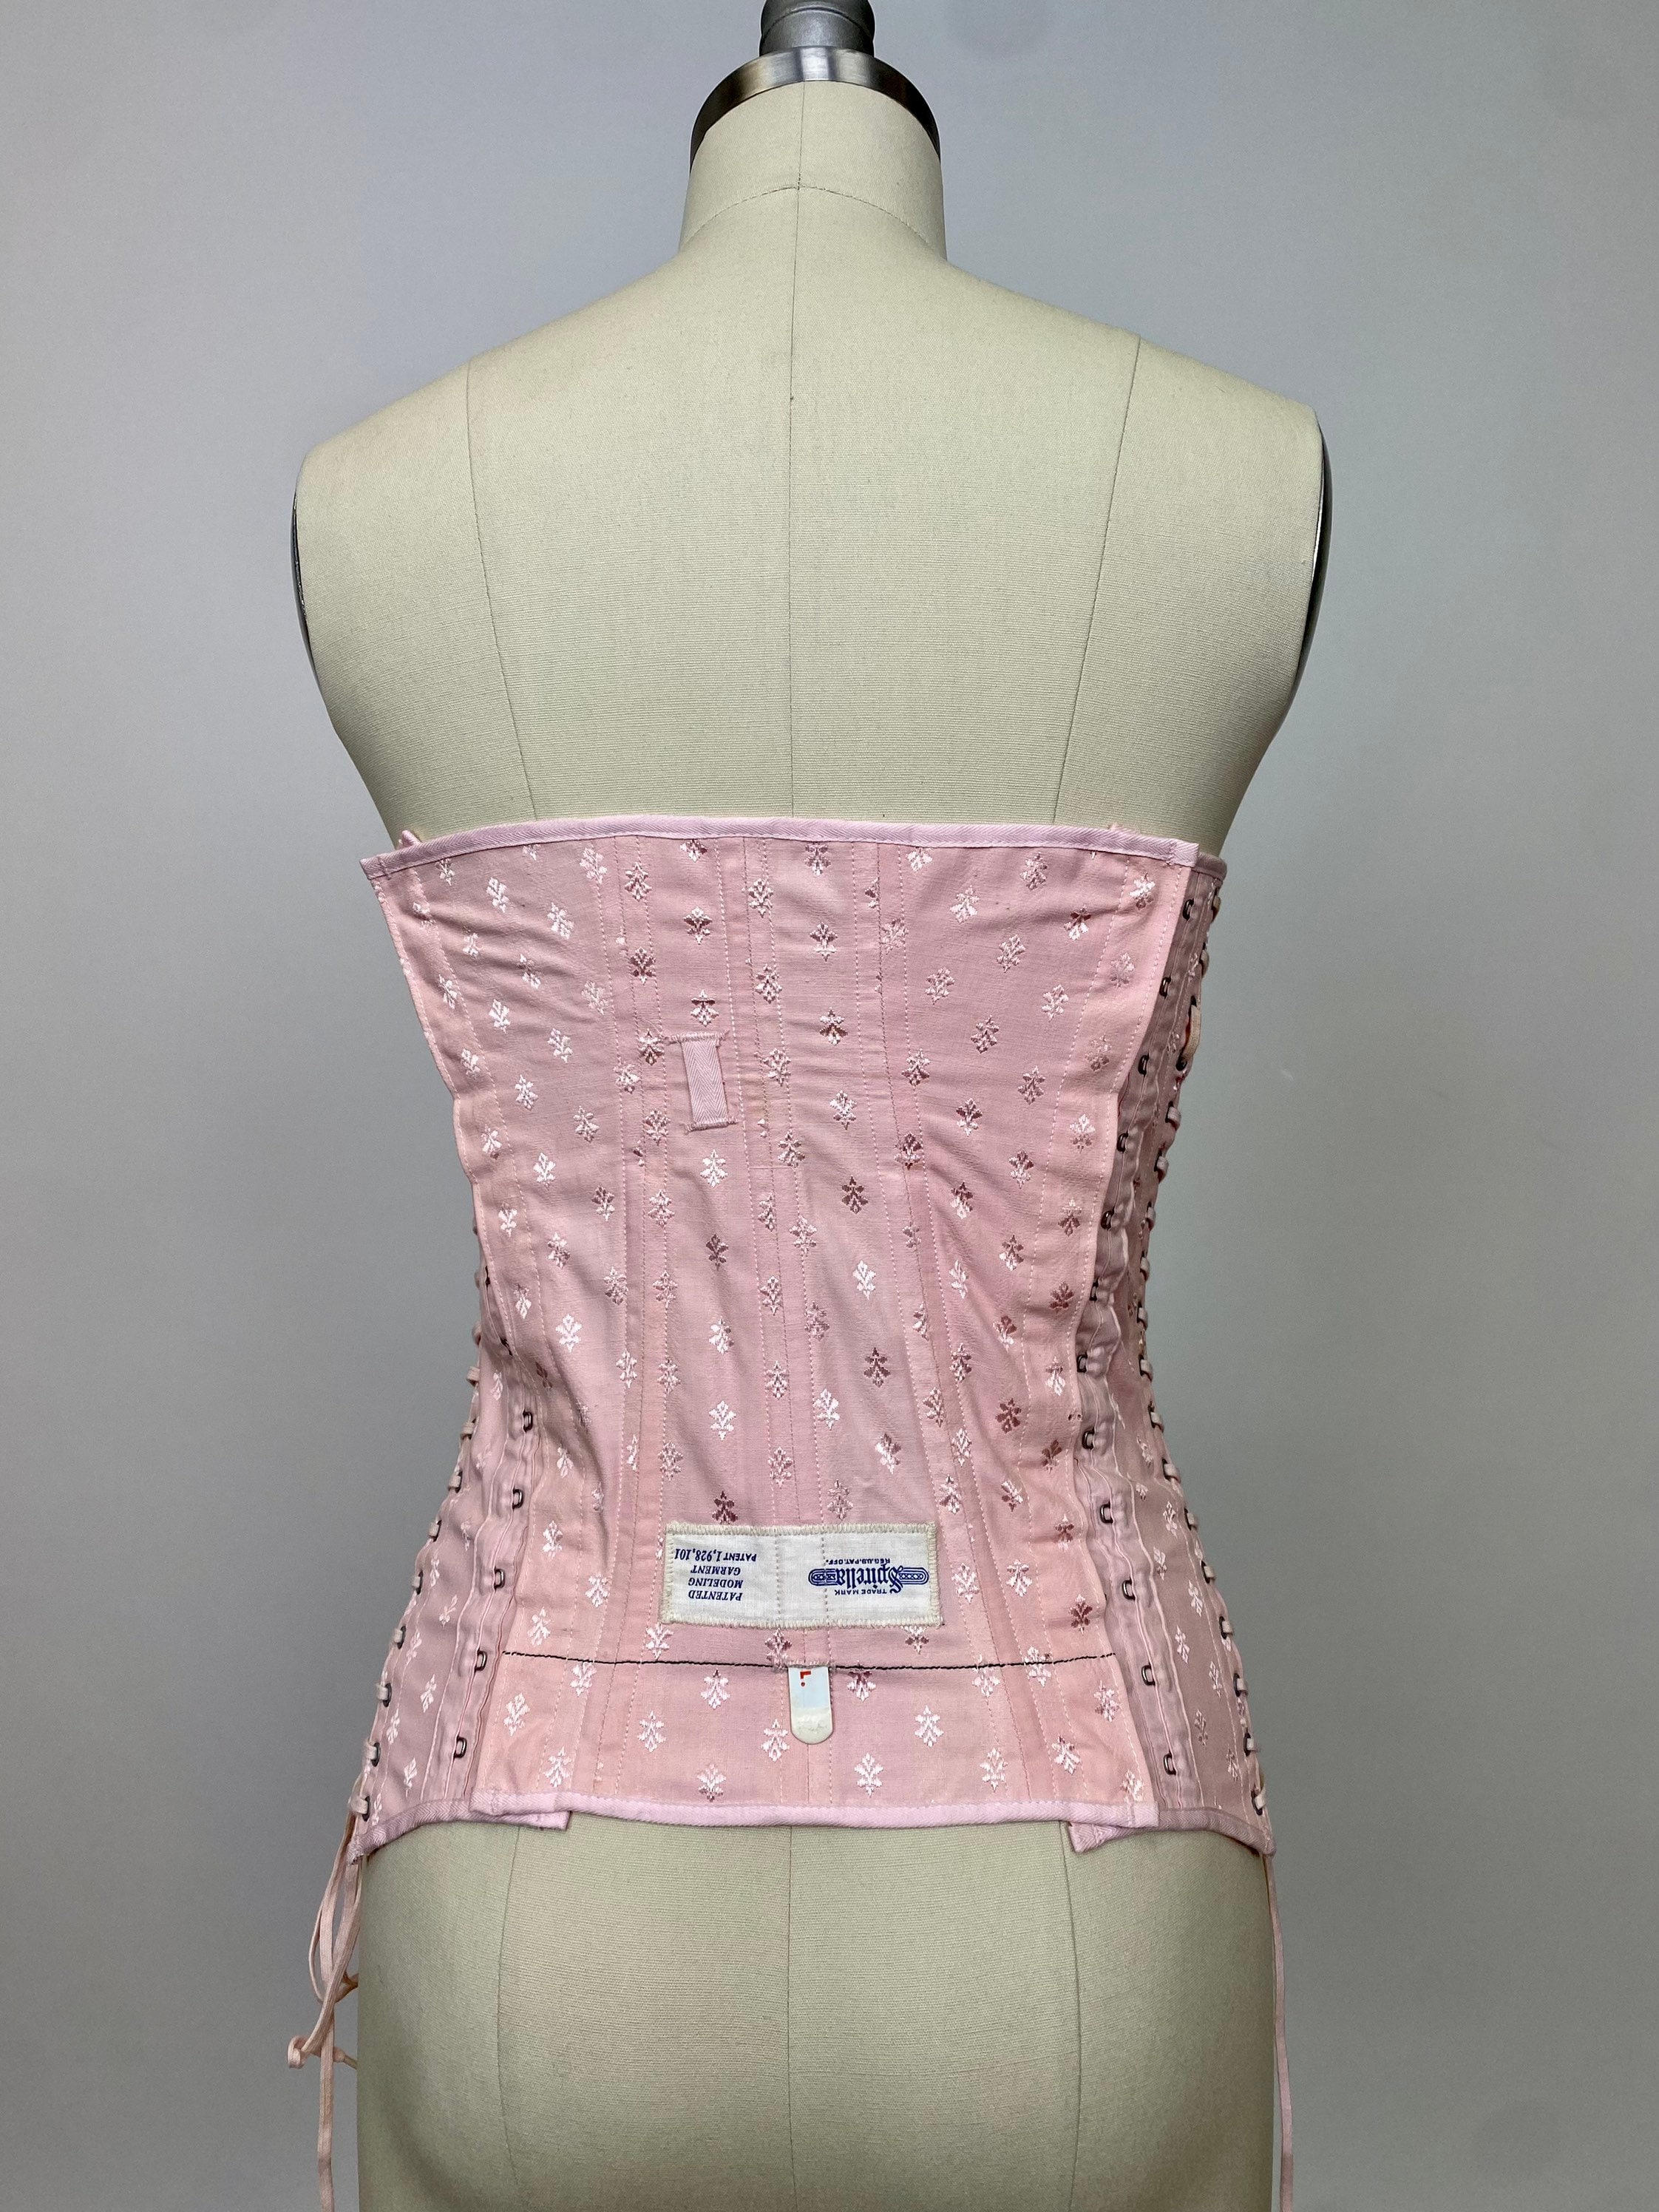 English: a advertising for spirella corset . 1924. Spirella 570